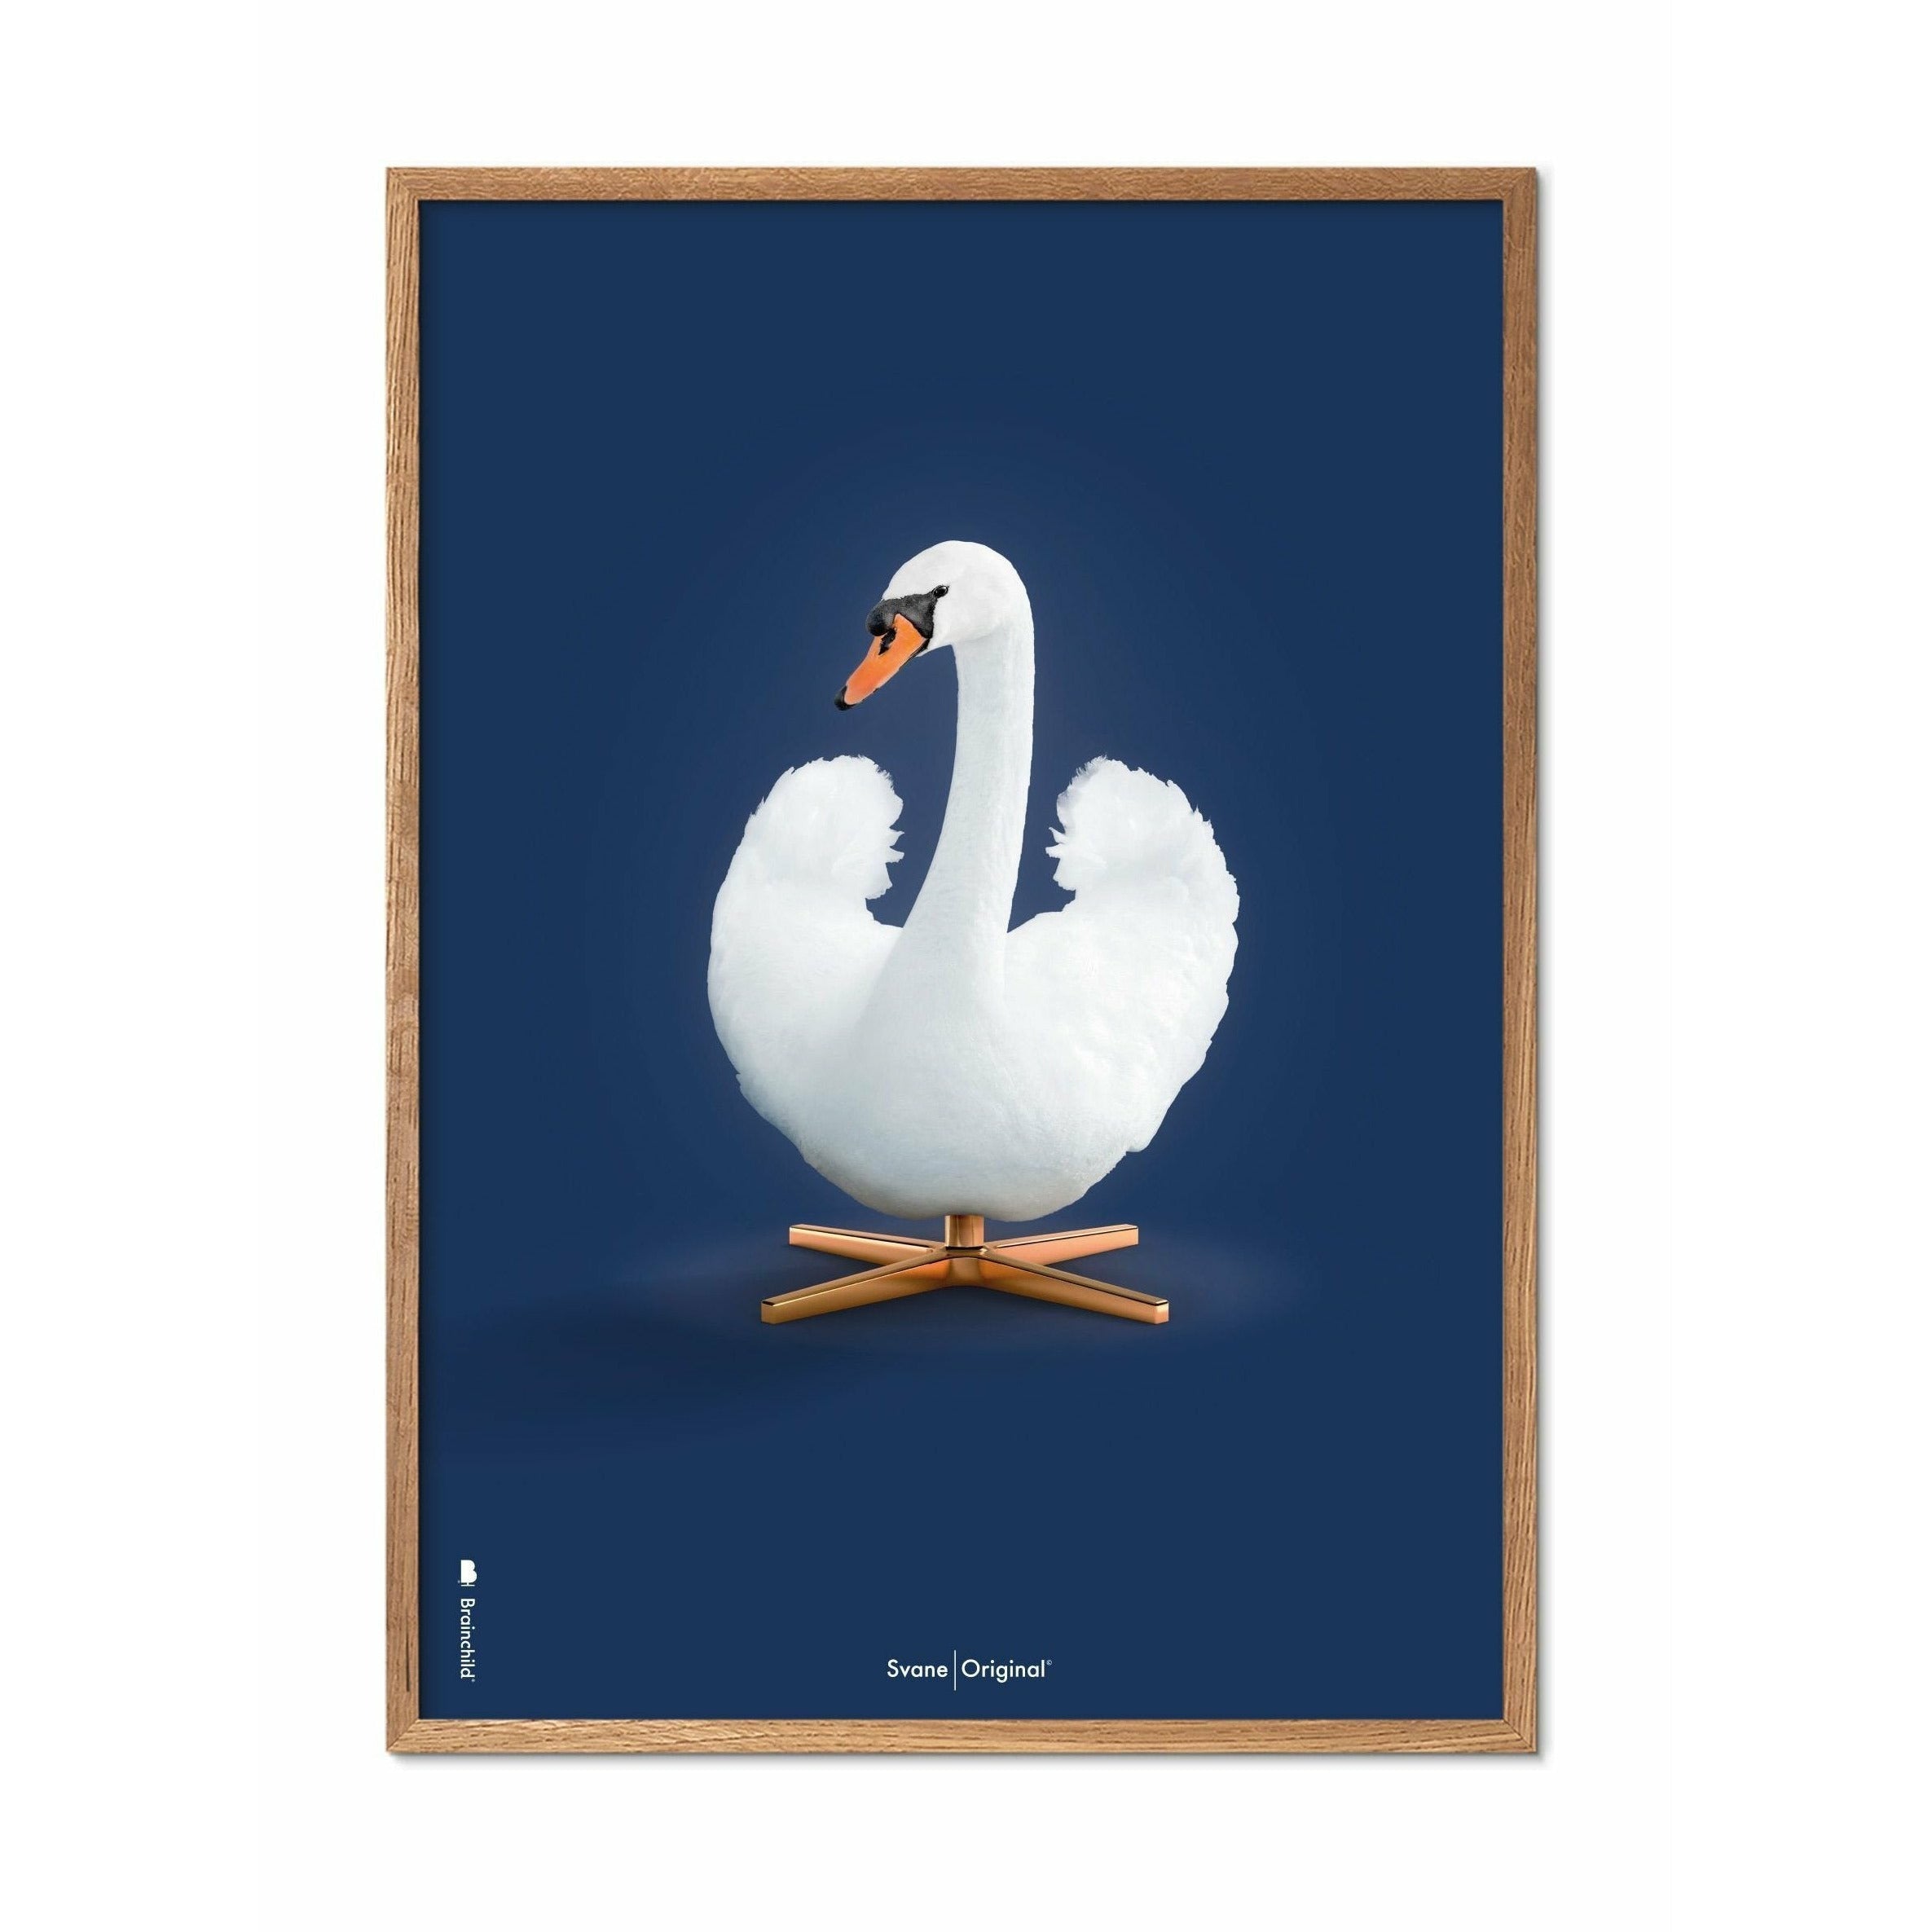 Póster clásico de Swan, marco de madera clara A5, fondo azul oscuro